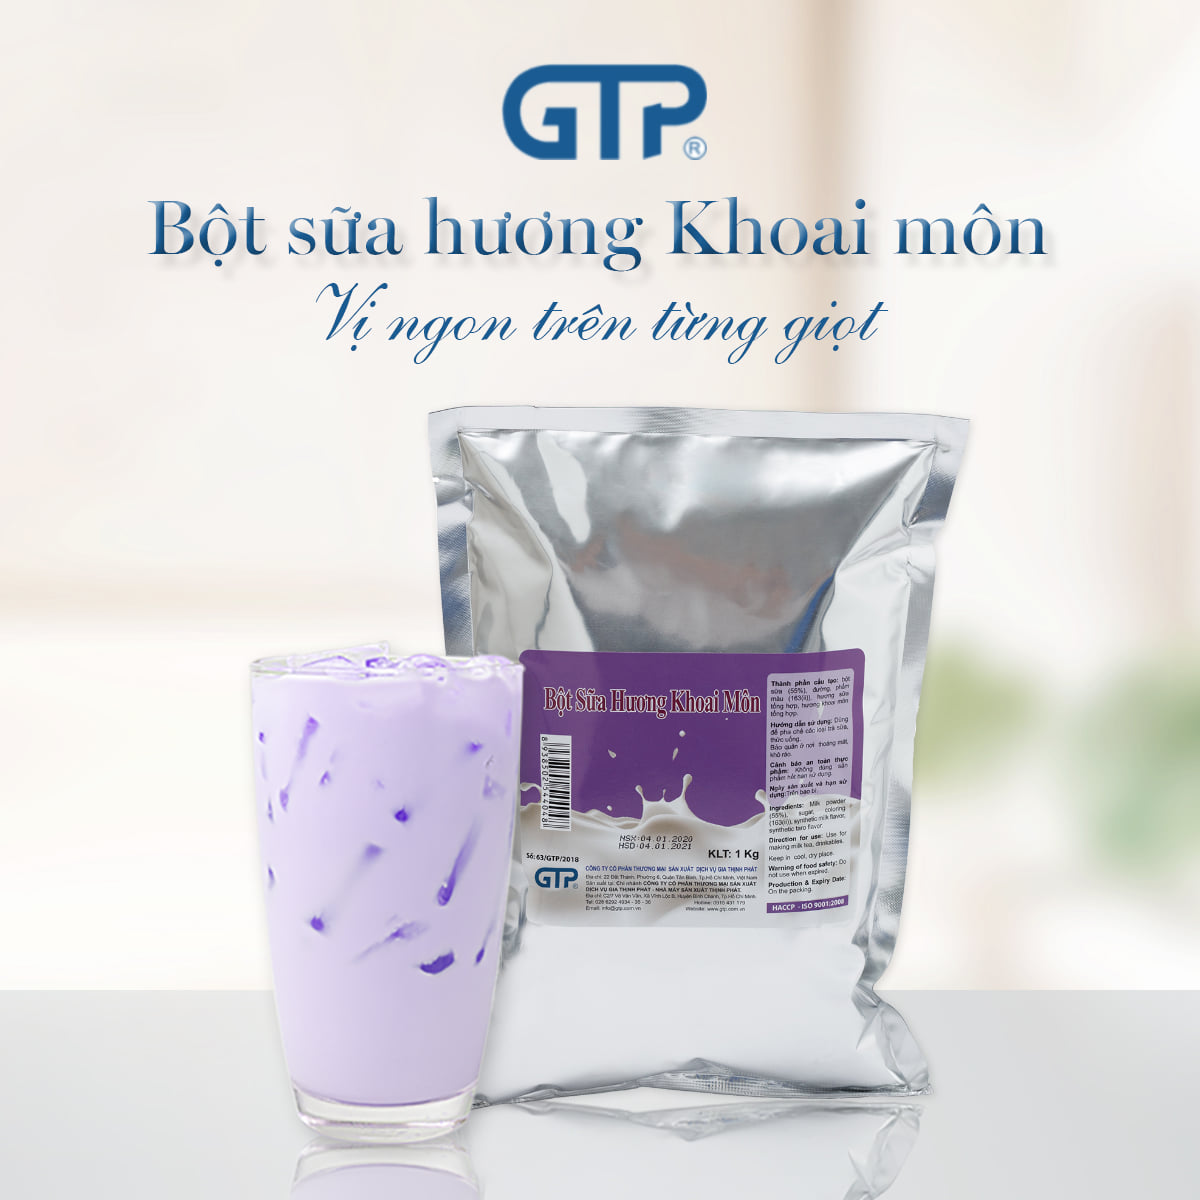 Có thể ứng dụng bột trà sữa khoai môn King vào các loại thức uống nào?
